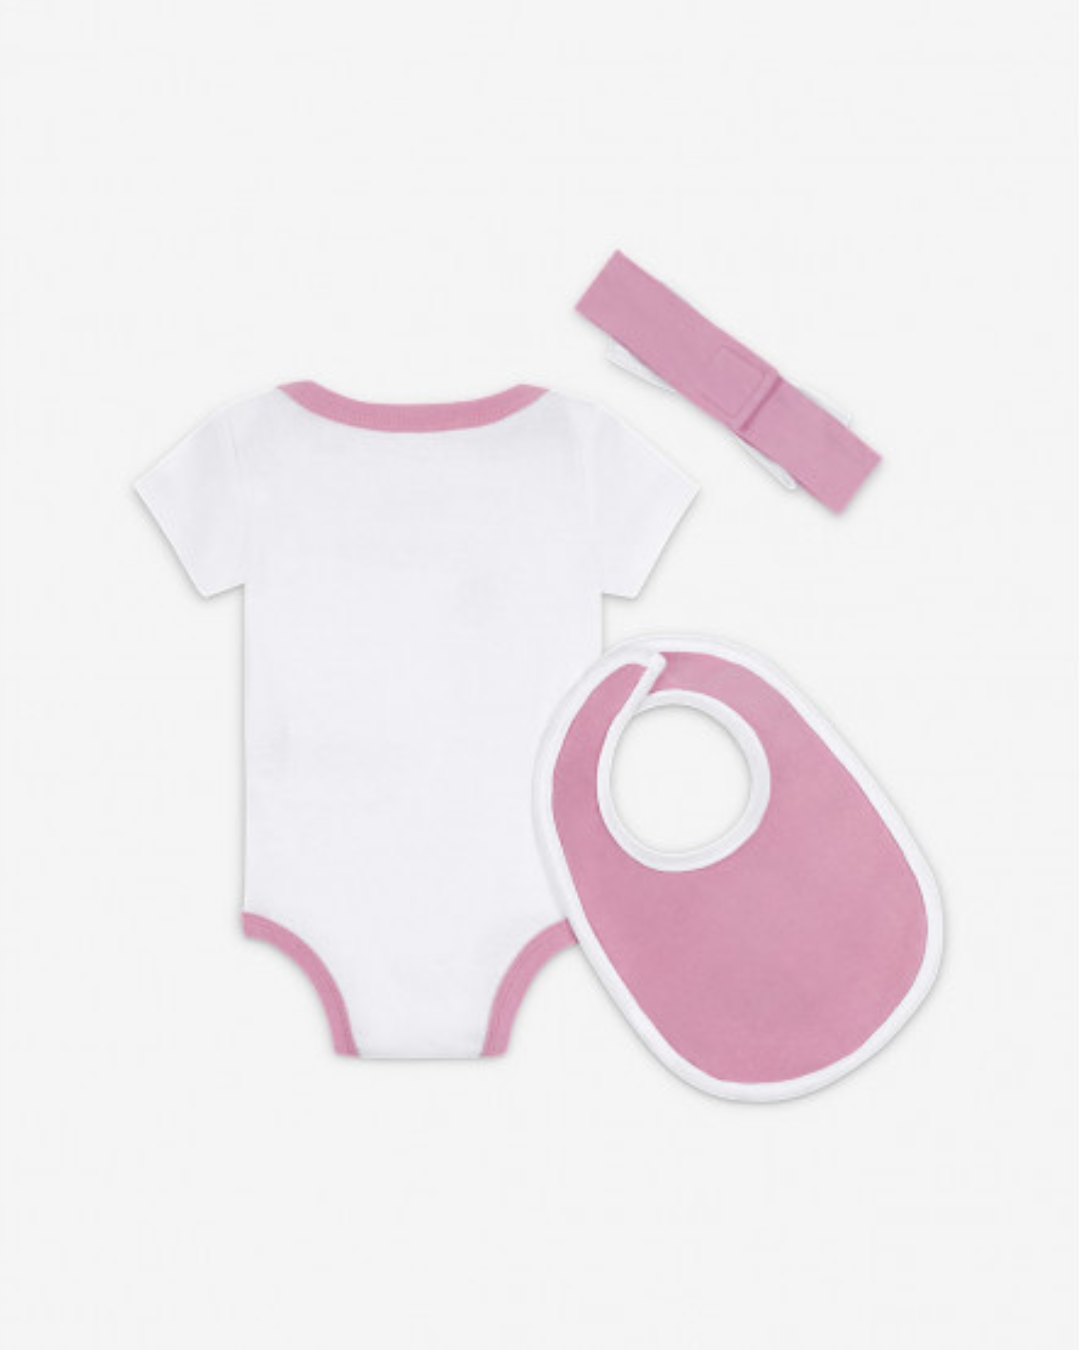 Nike Baby Set - White/Pink/Black